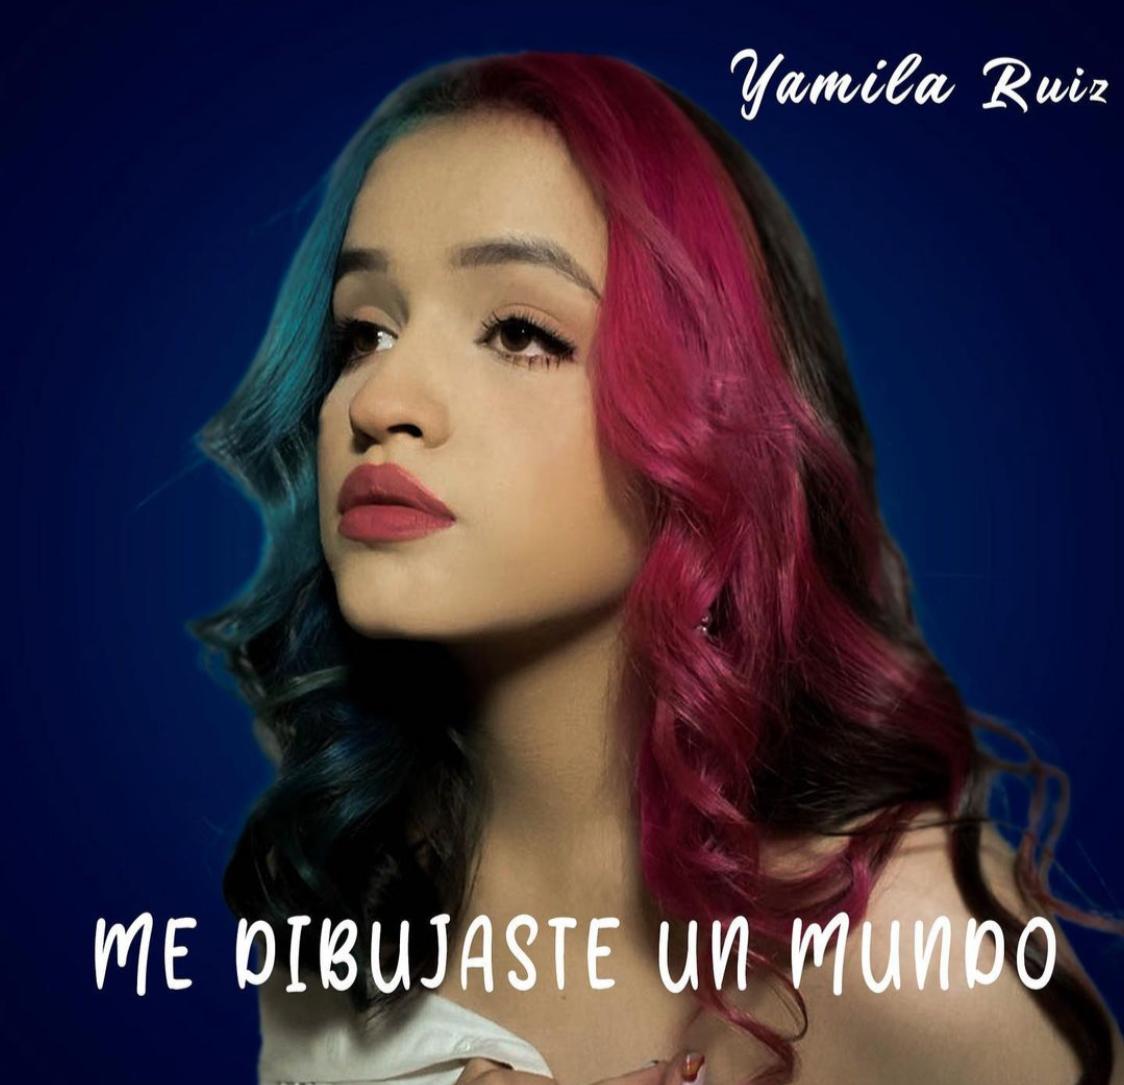 Yamila Ruiz fue tendencia en YouTube en menos de 24 horas tras lanzar su primer sencillo. Foto: gentileza.